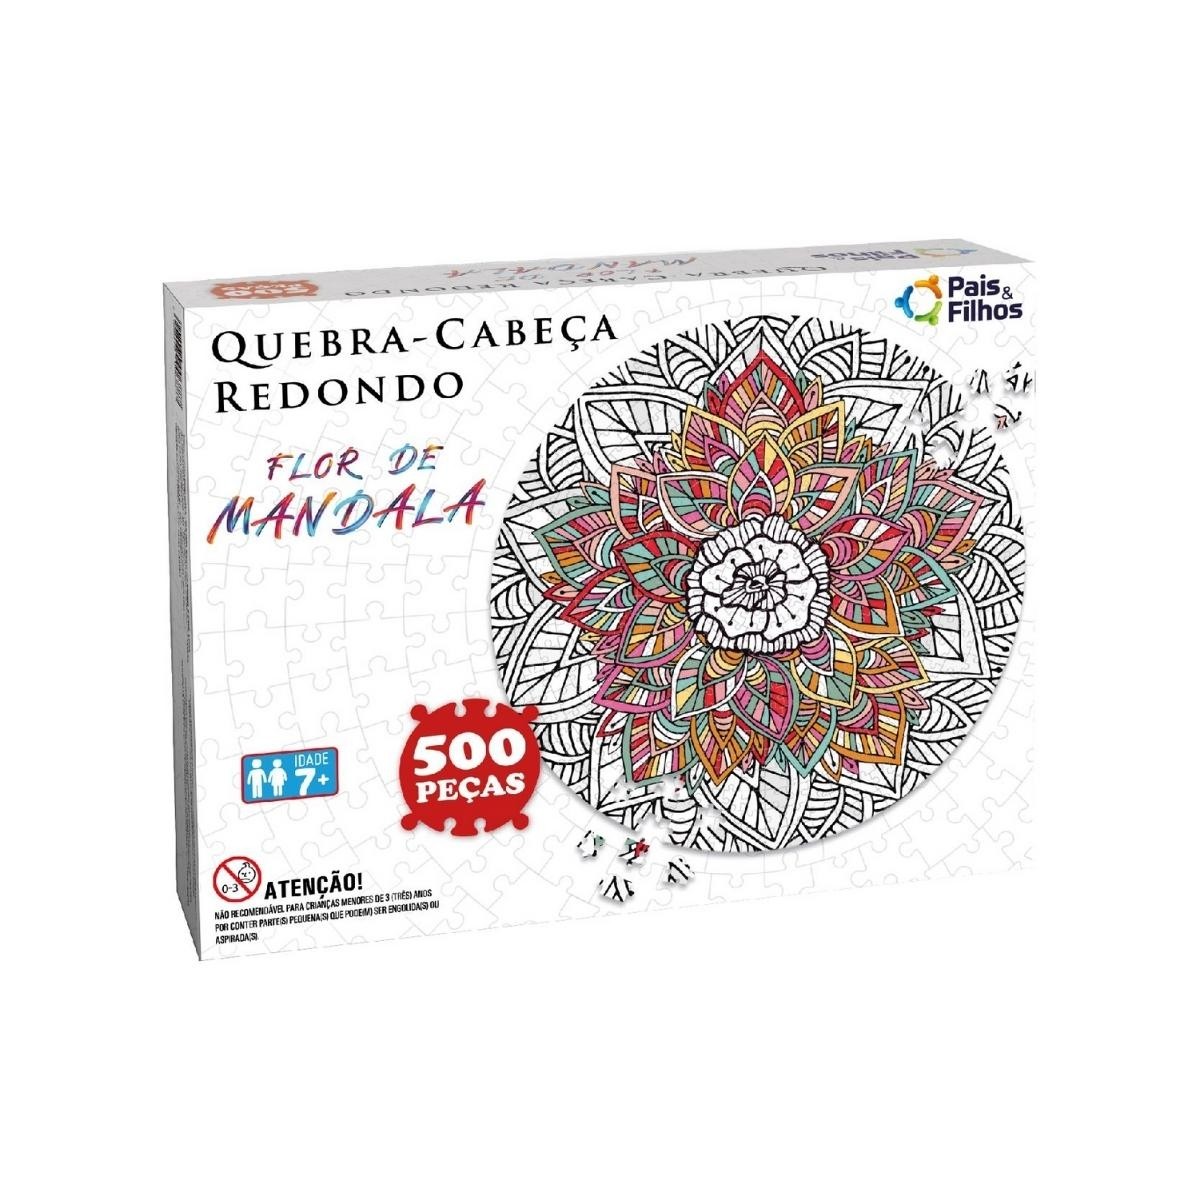 Quebra-Cabeça Redondo 500 peças Flor de Mandala - Pais e Filhos